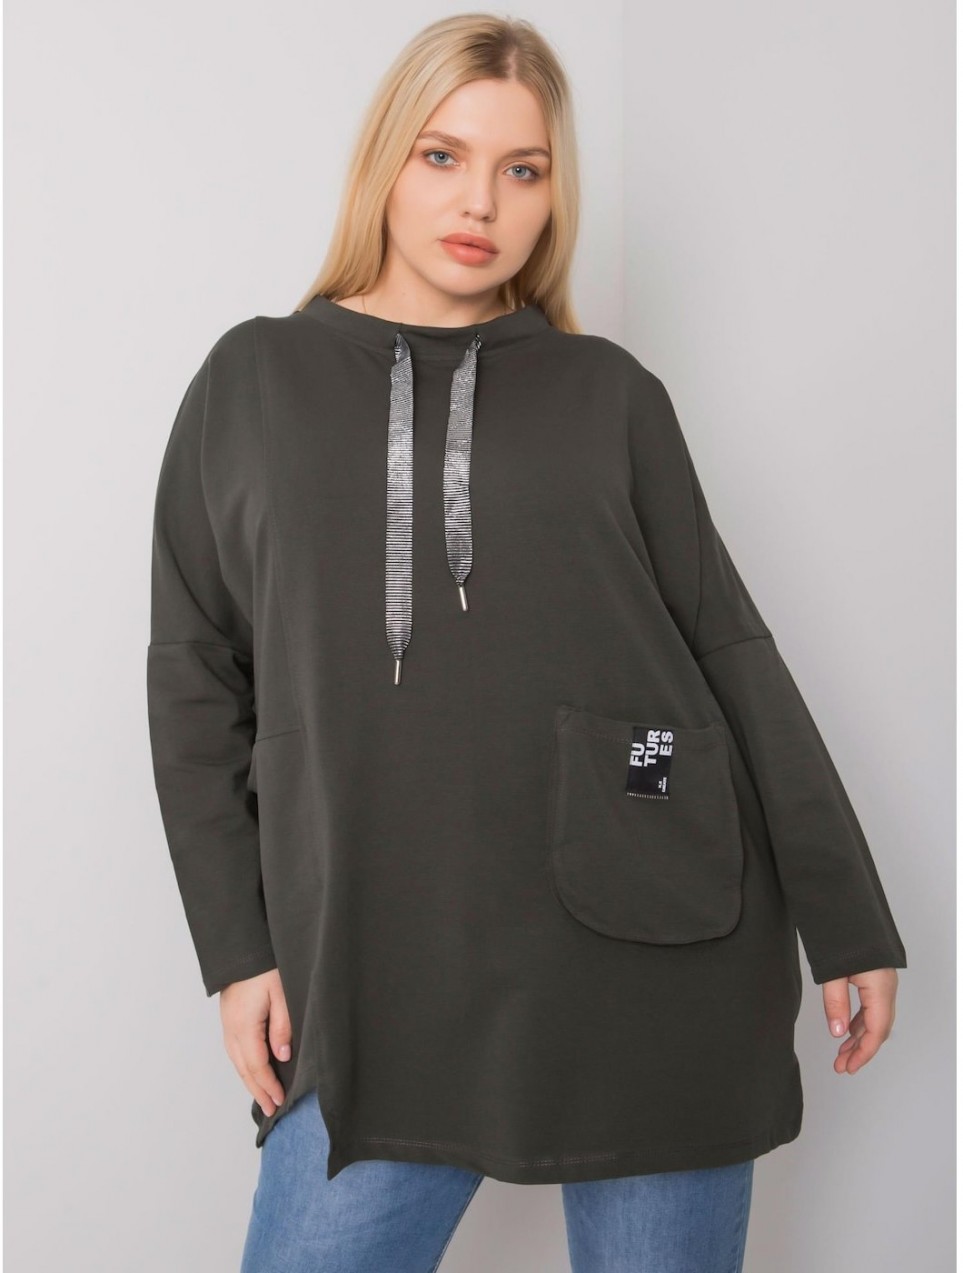 Dark khaki cotton tunic in oversized Redmond